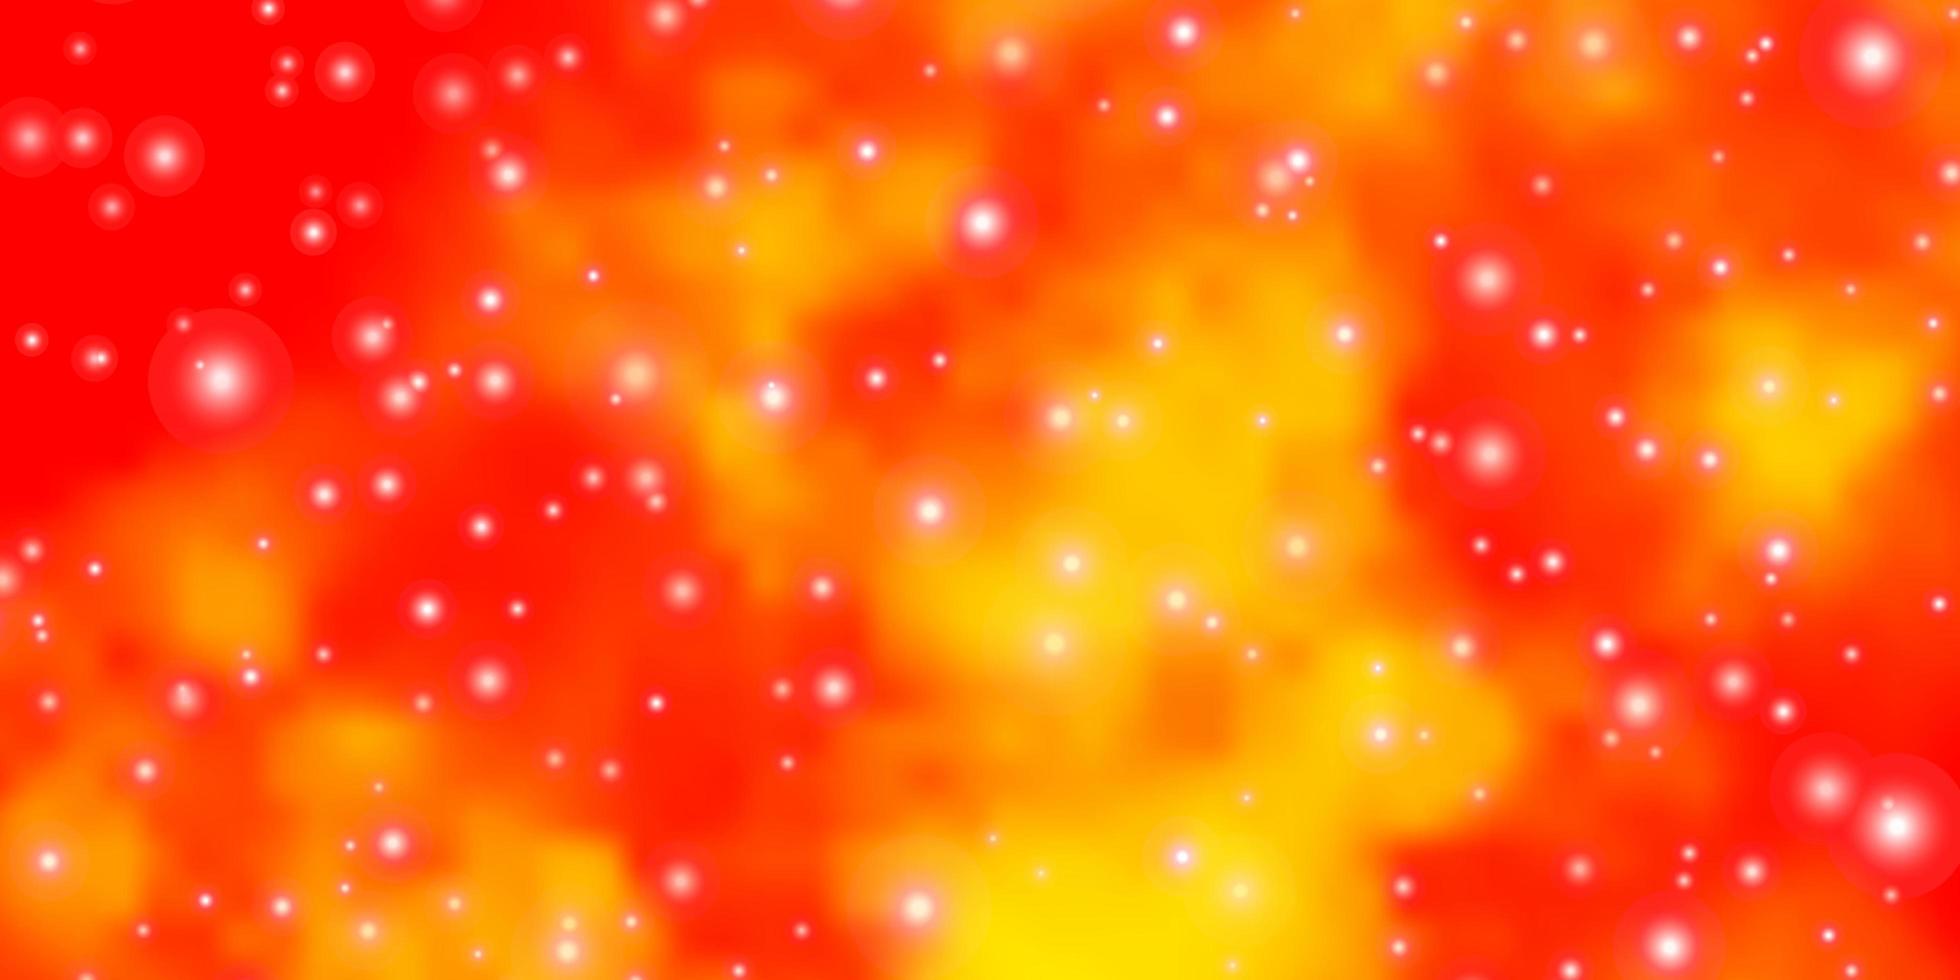 layout vettoriale arancione chiaro con stelle luminose.